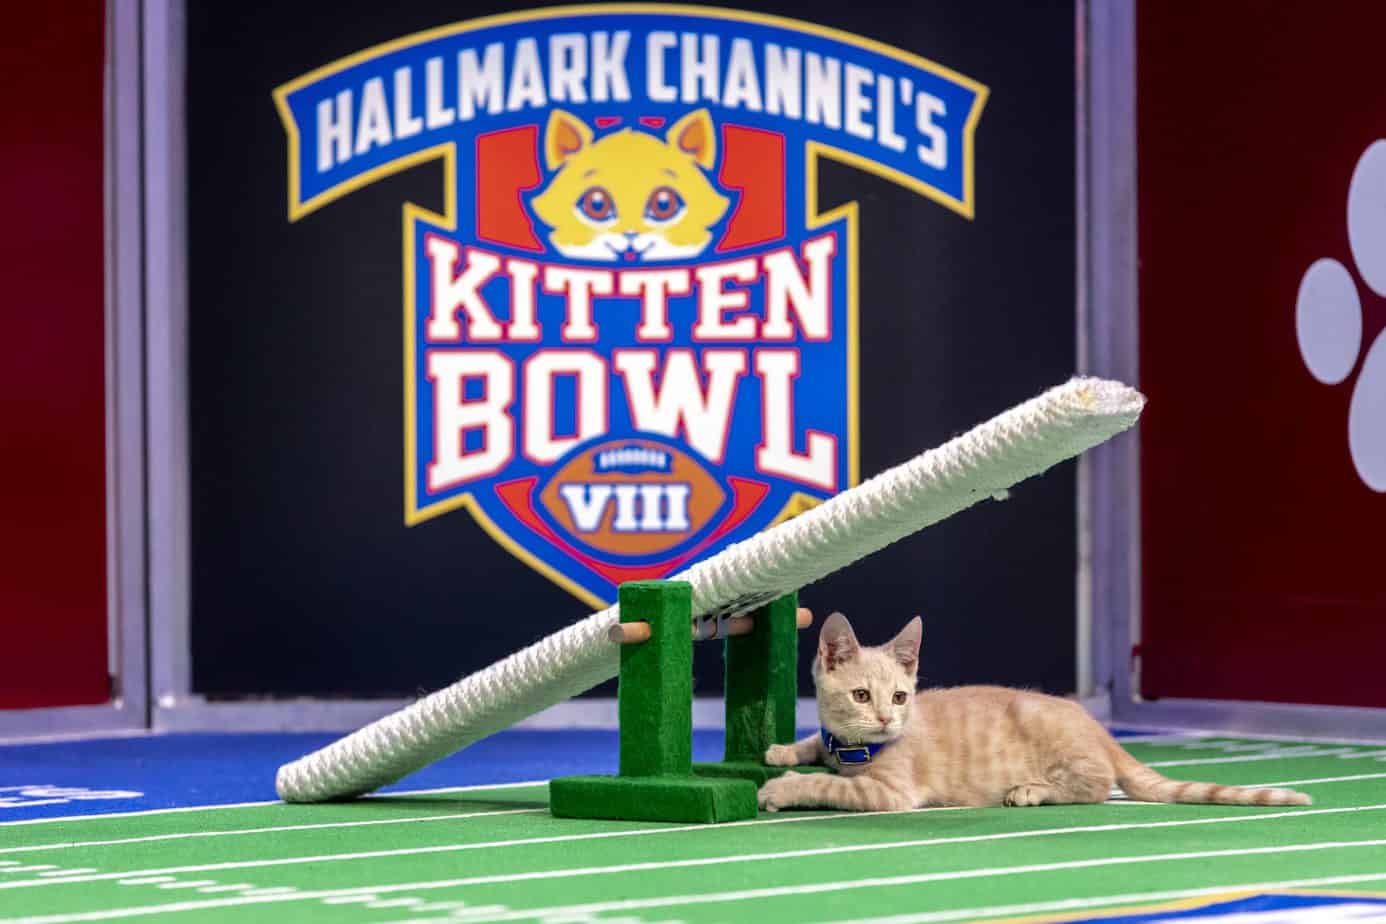 Kitten Bowl VIII Final Image Assets